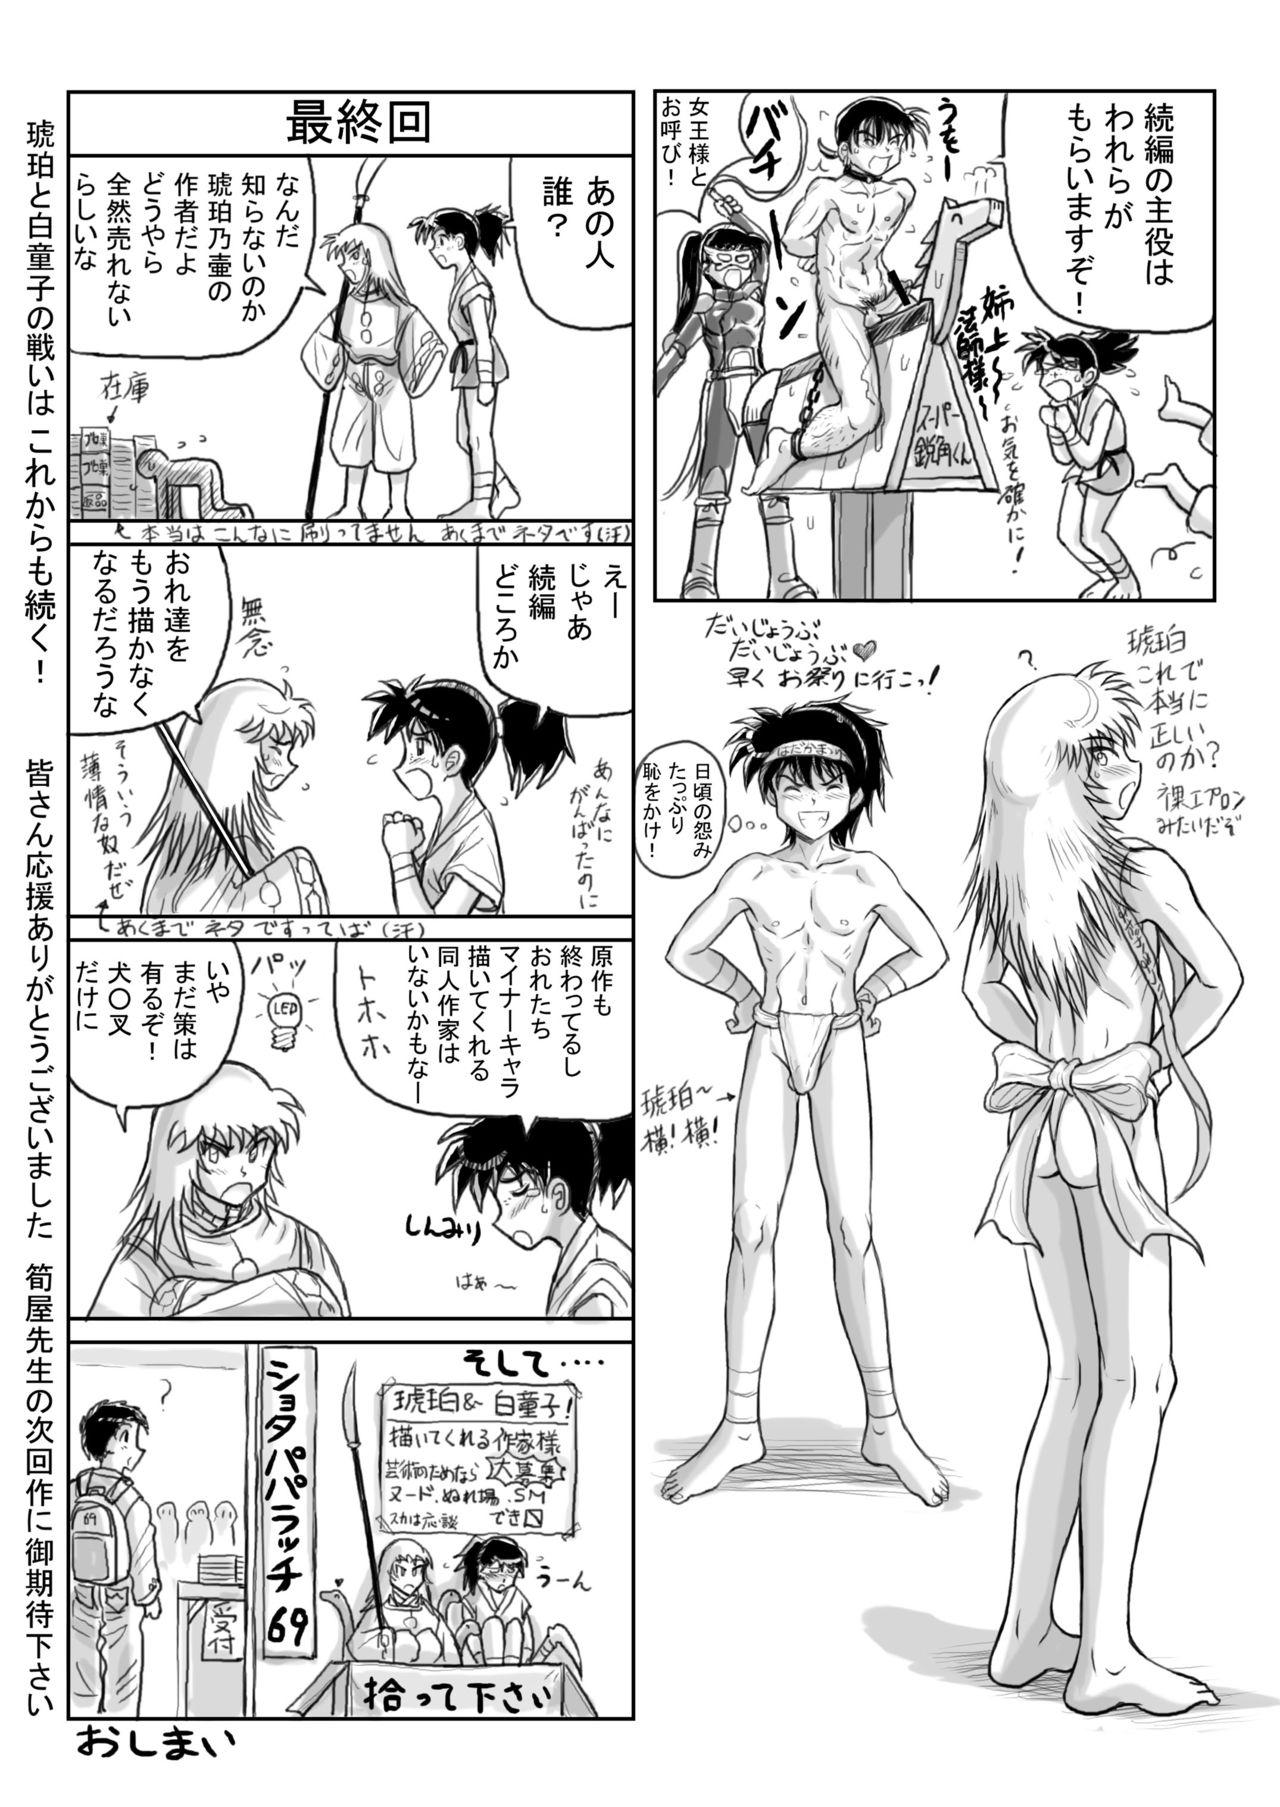 Kohaku no Tsubo Manga-ban 37